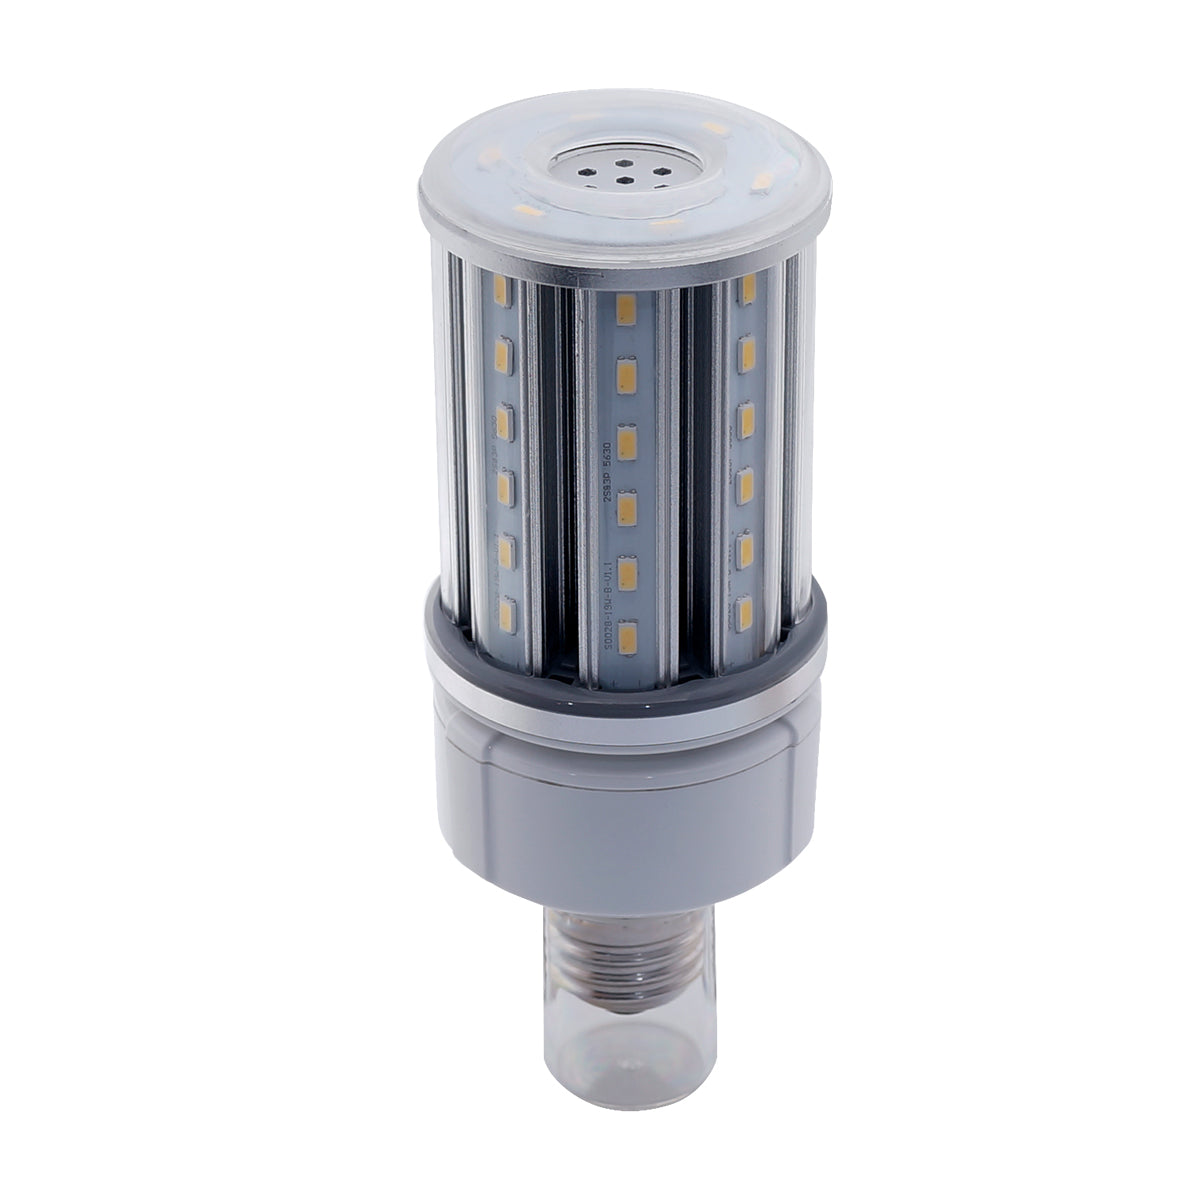 CNL+ LED Corn Lamp – 19 Watt